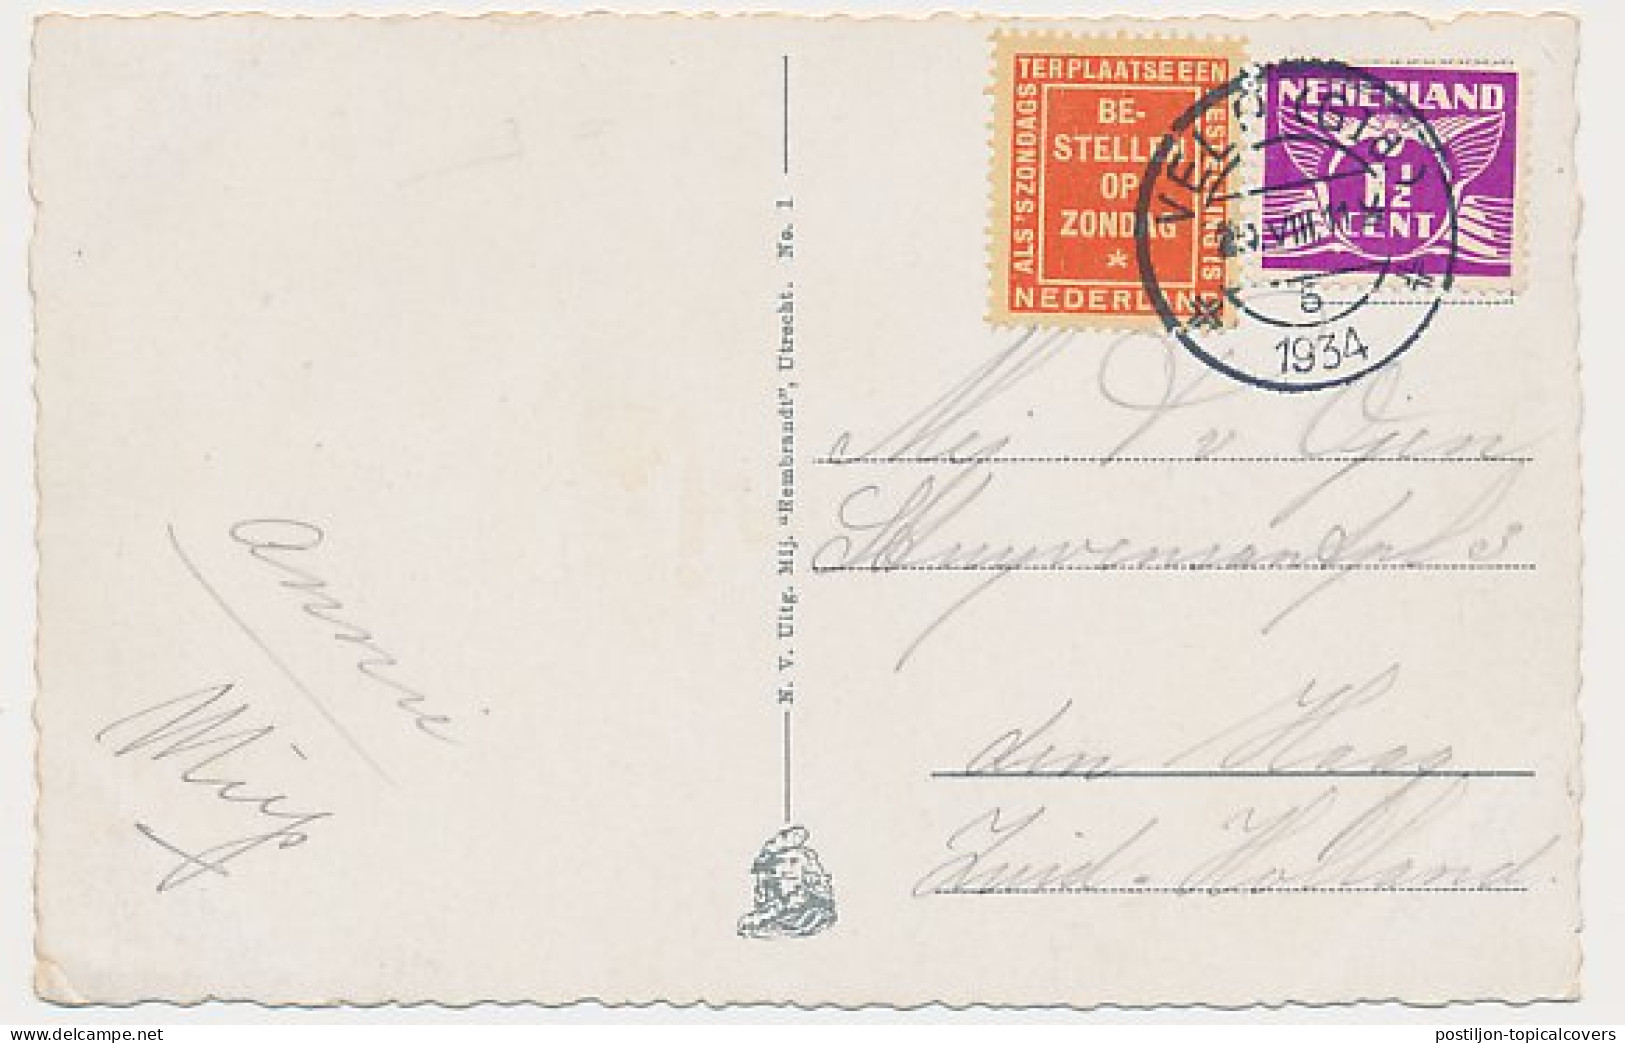 Bestellen Op Zondag - Velp - Den Haag 1934 - Briefe U. Dokumente